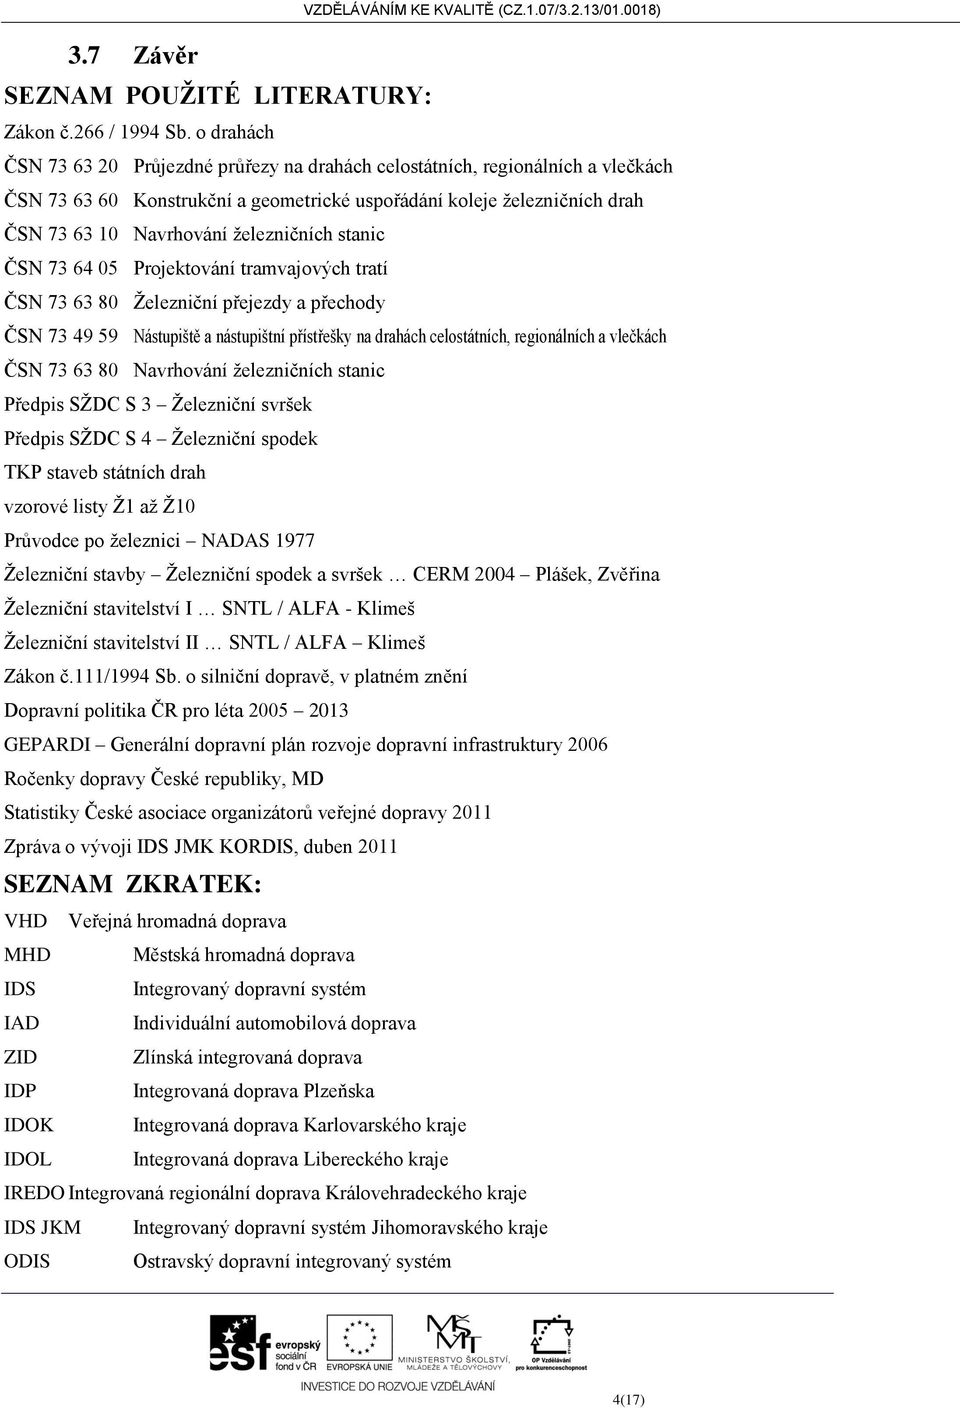 železničních stanic ČSN 73 64 05 Projektování tramvajových tratí ČSN 73 63 80 Železniční přejezdy a přechody ČSN 73 49 59 Nástupiště a nástupištní přístřešky na drahách celostátních, regionálních a